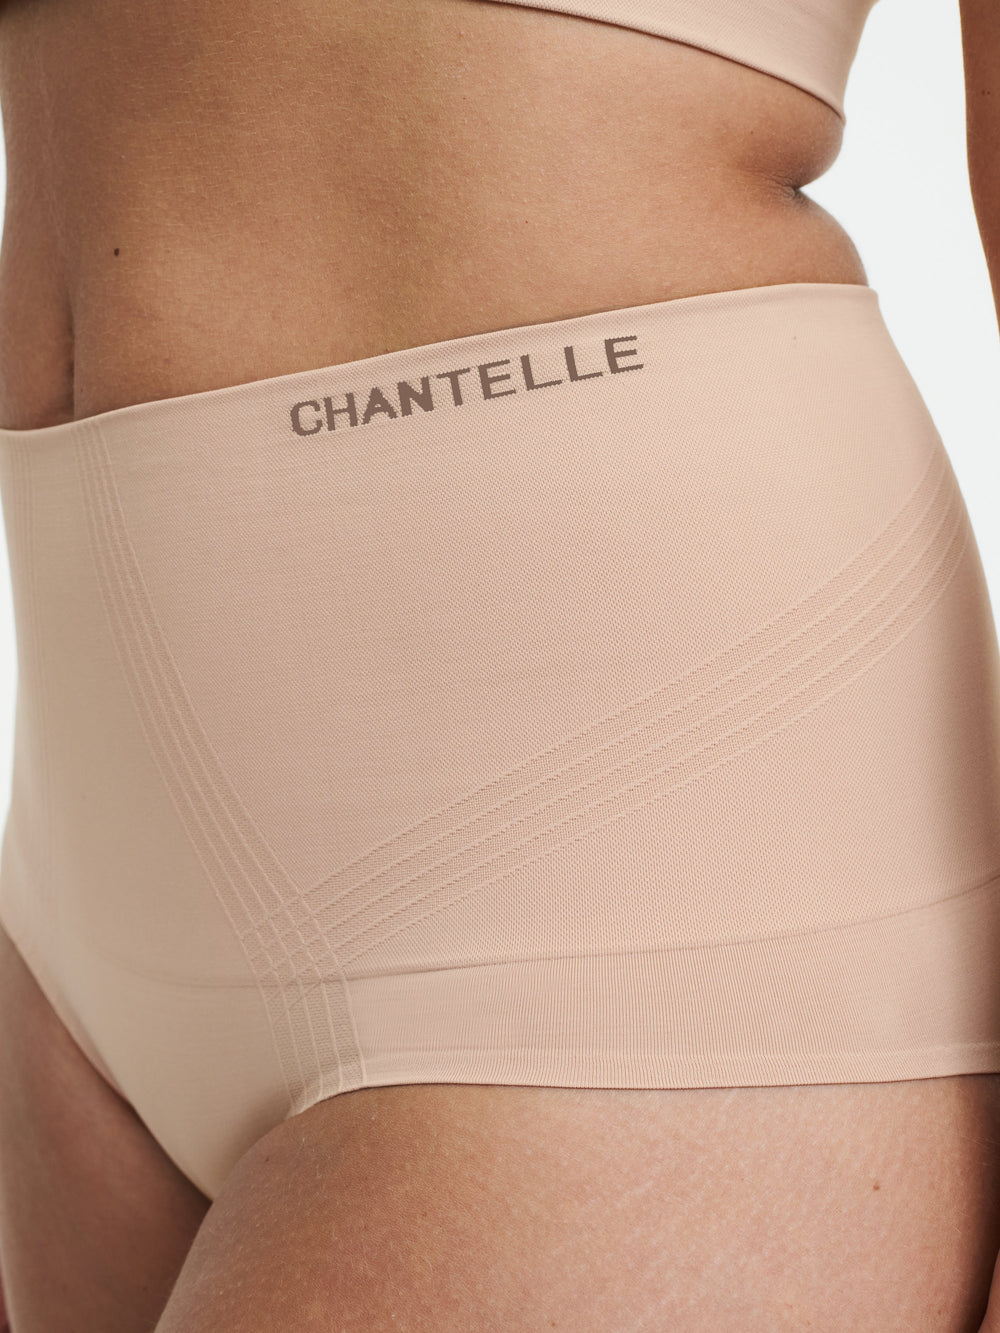 Chantelle Smooth Comfort Моделирующие полные трусы с высокой талией - Sirocco Full Brief Chantelle